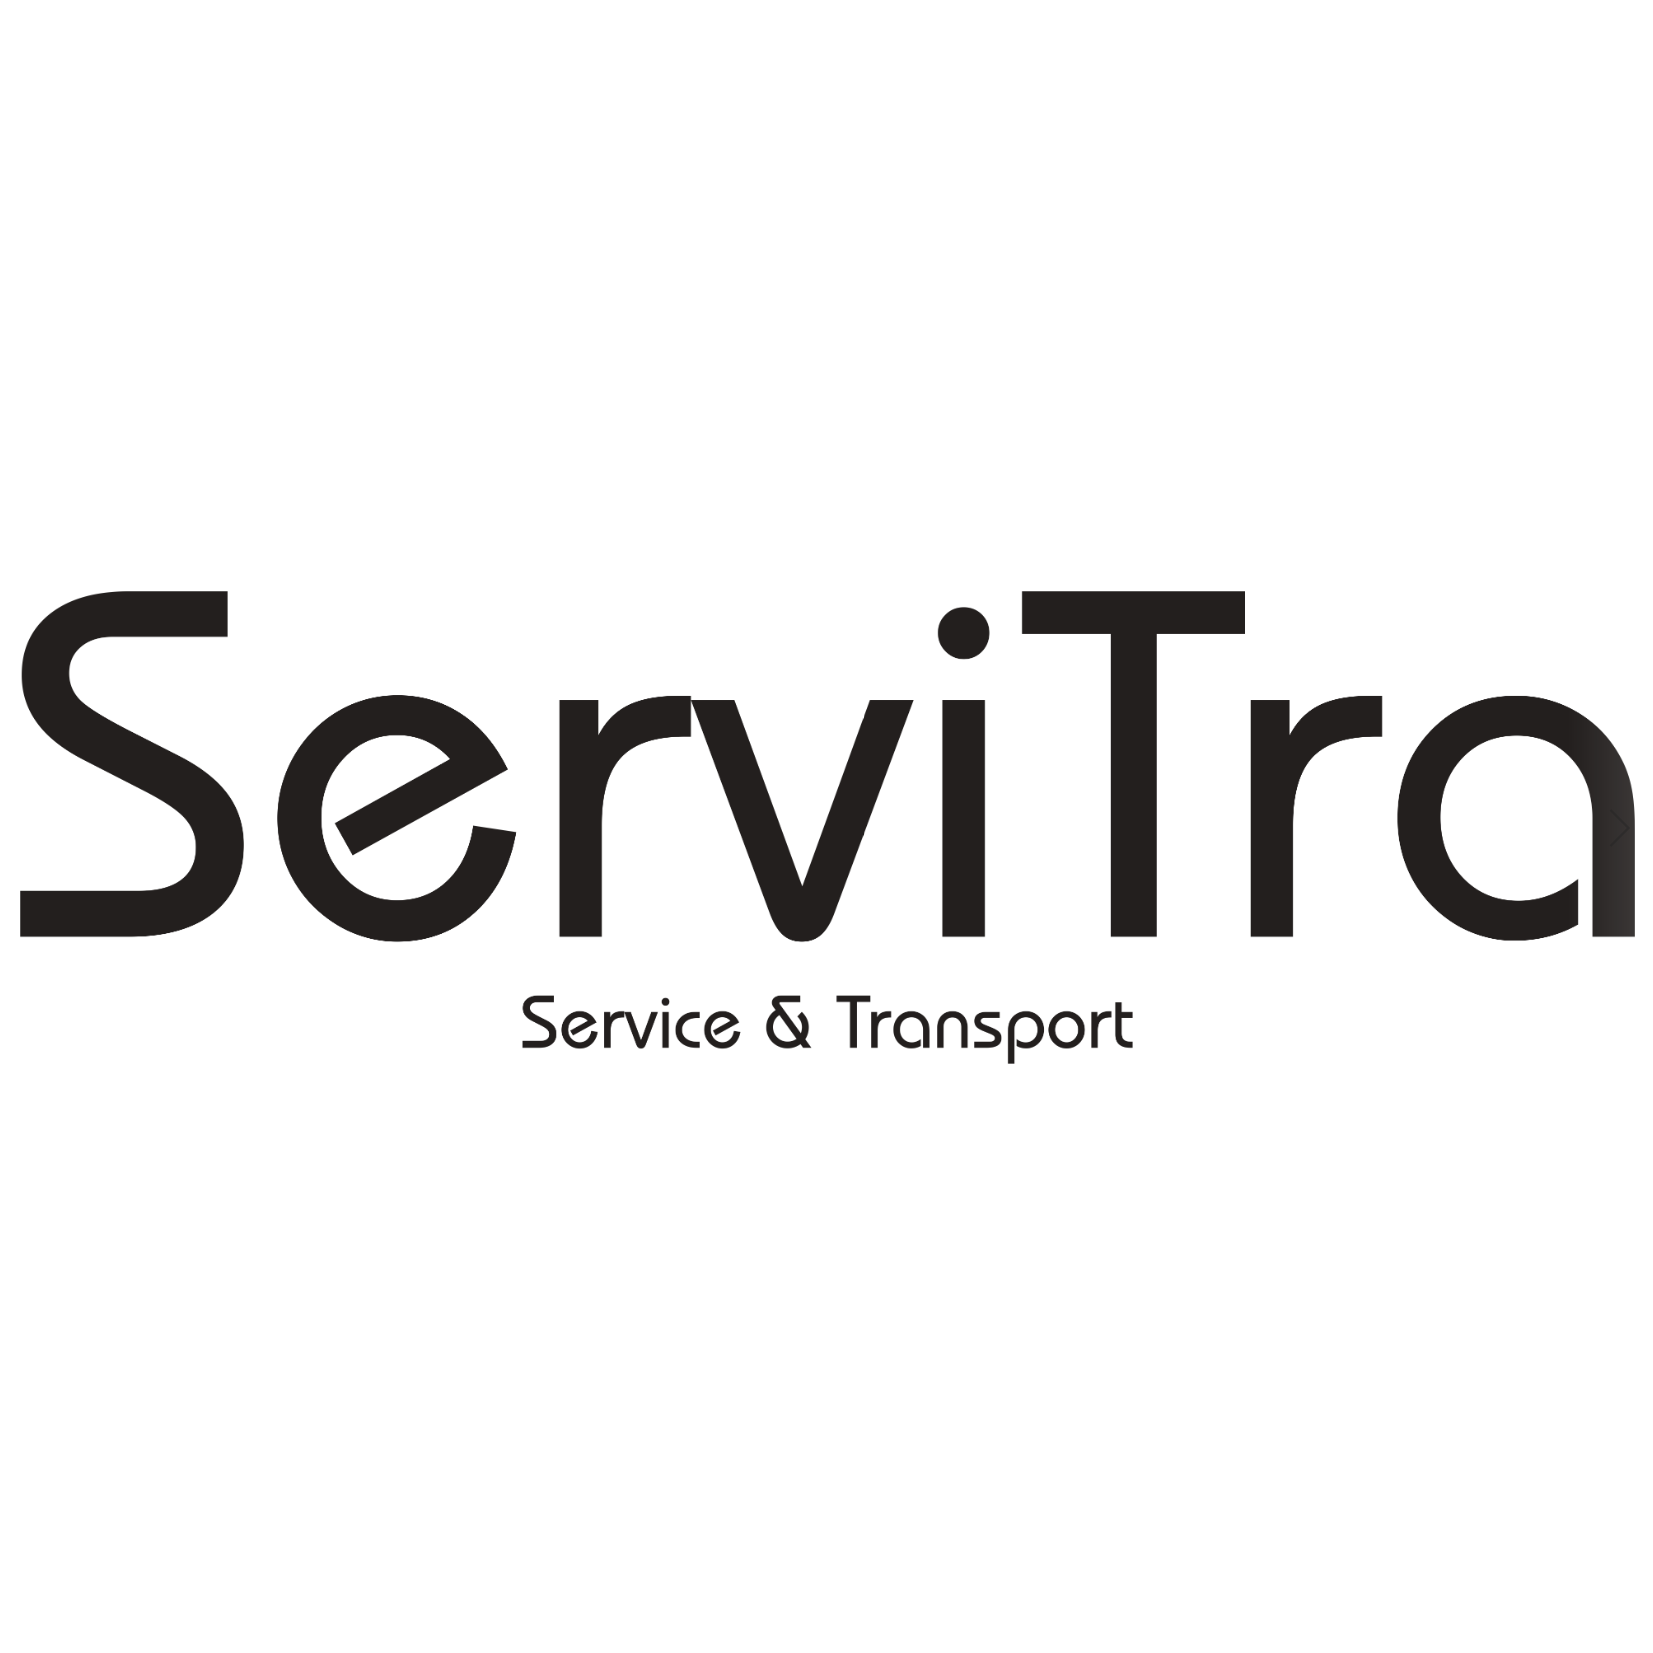 ServiTra GmbH & Co. KG in Braunschweig